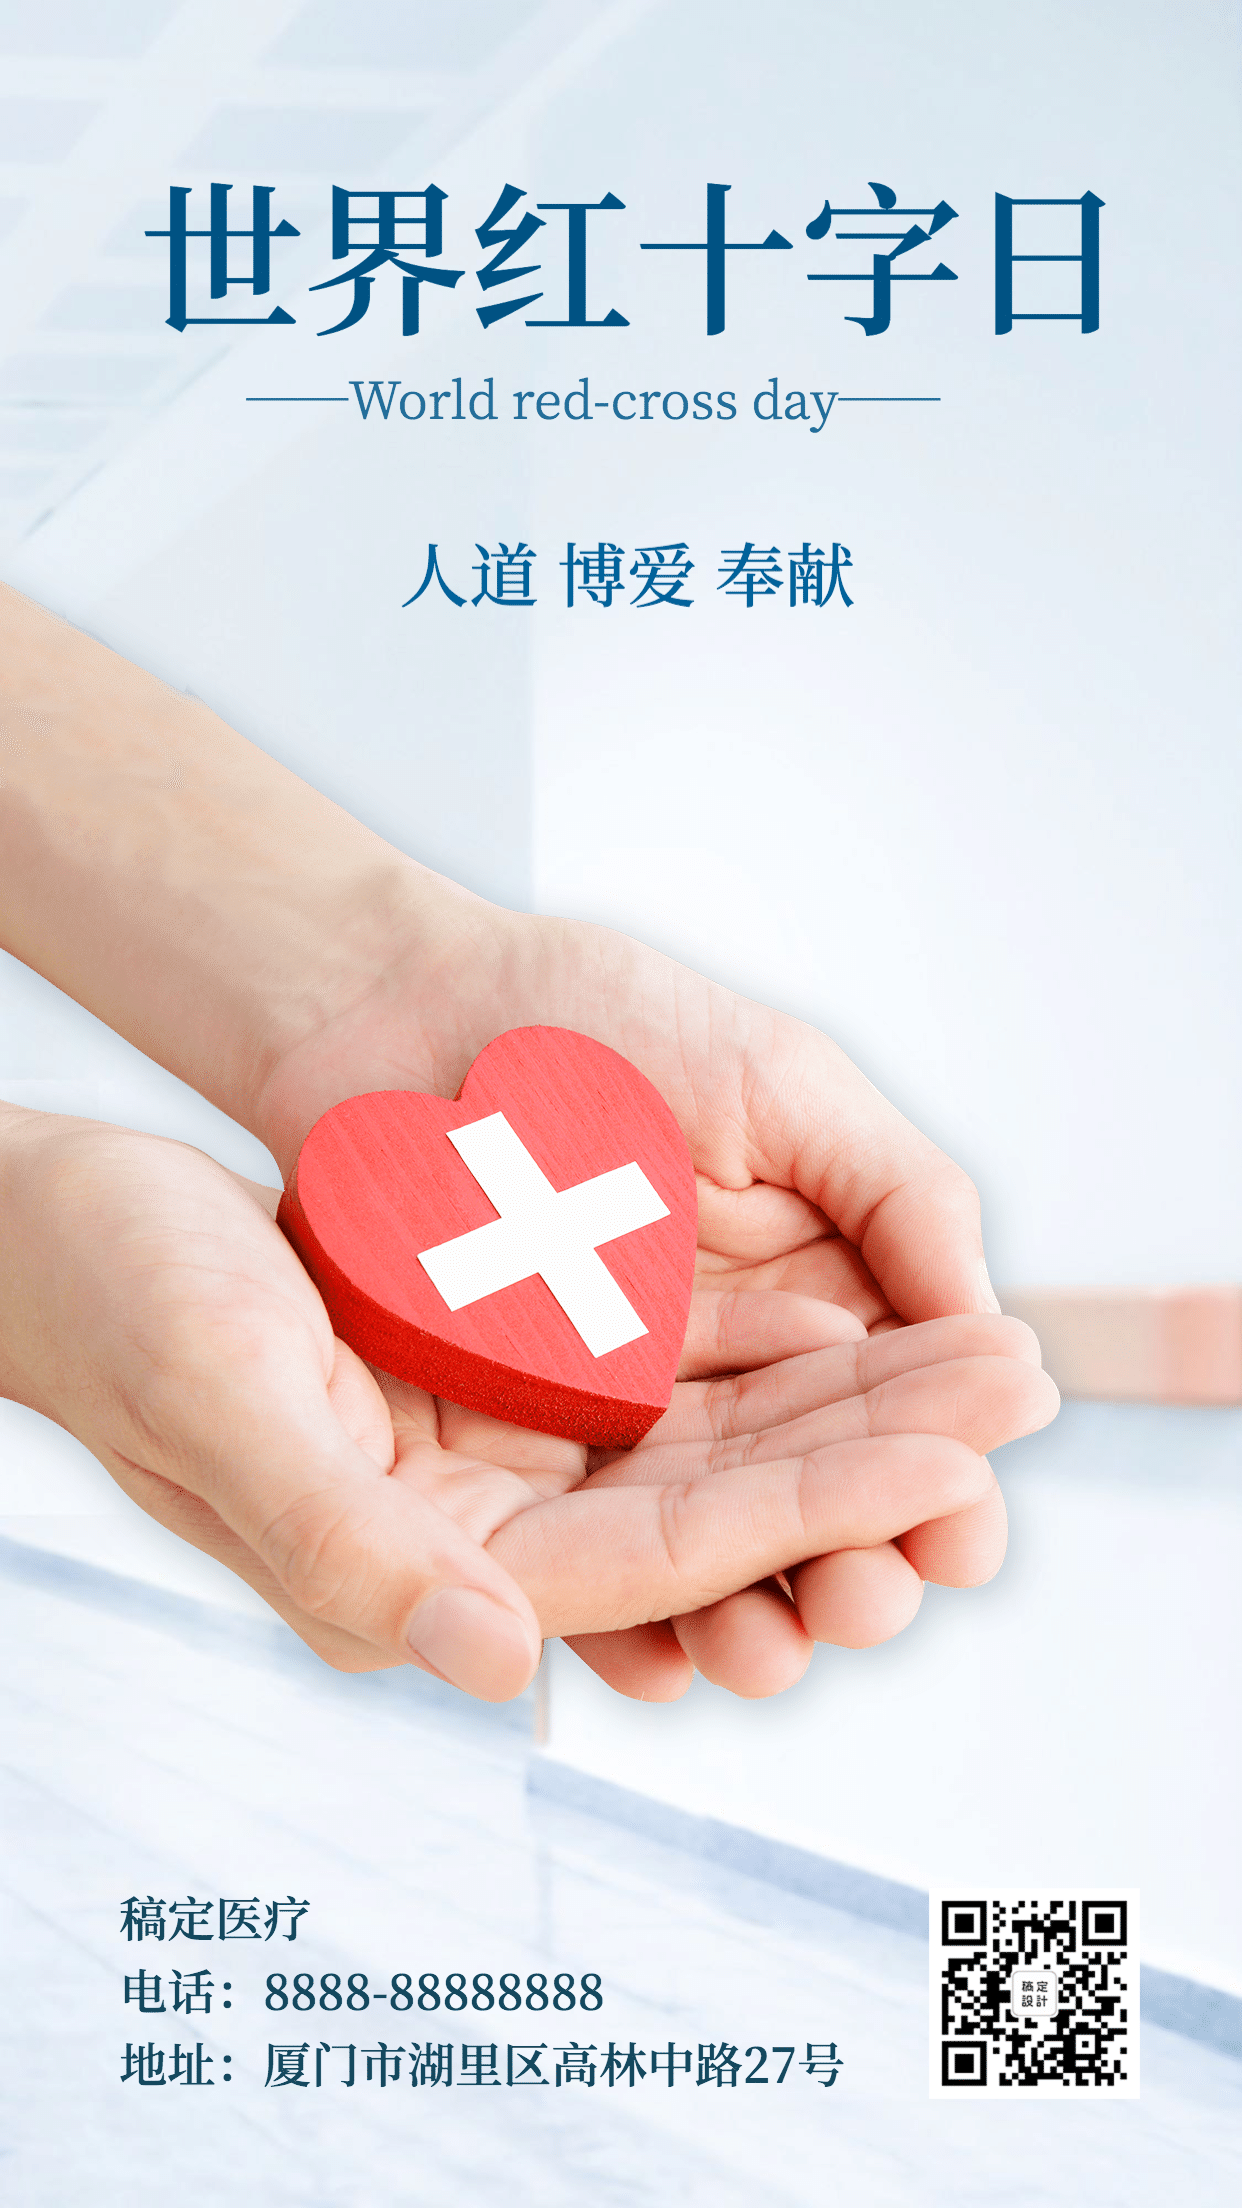 世界红十字日医疗公益手机海报